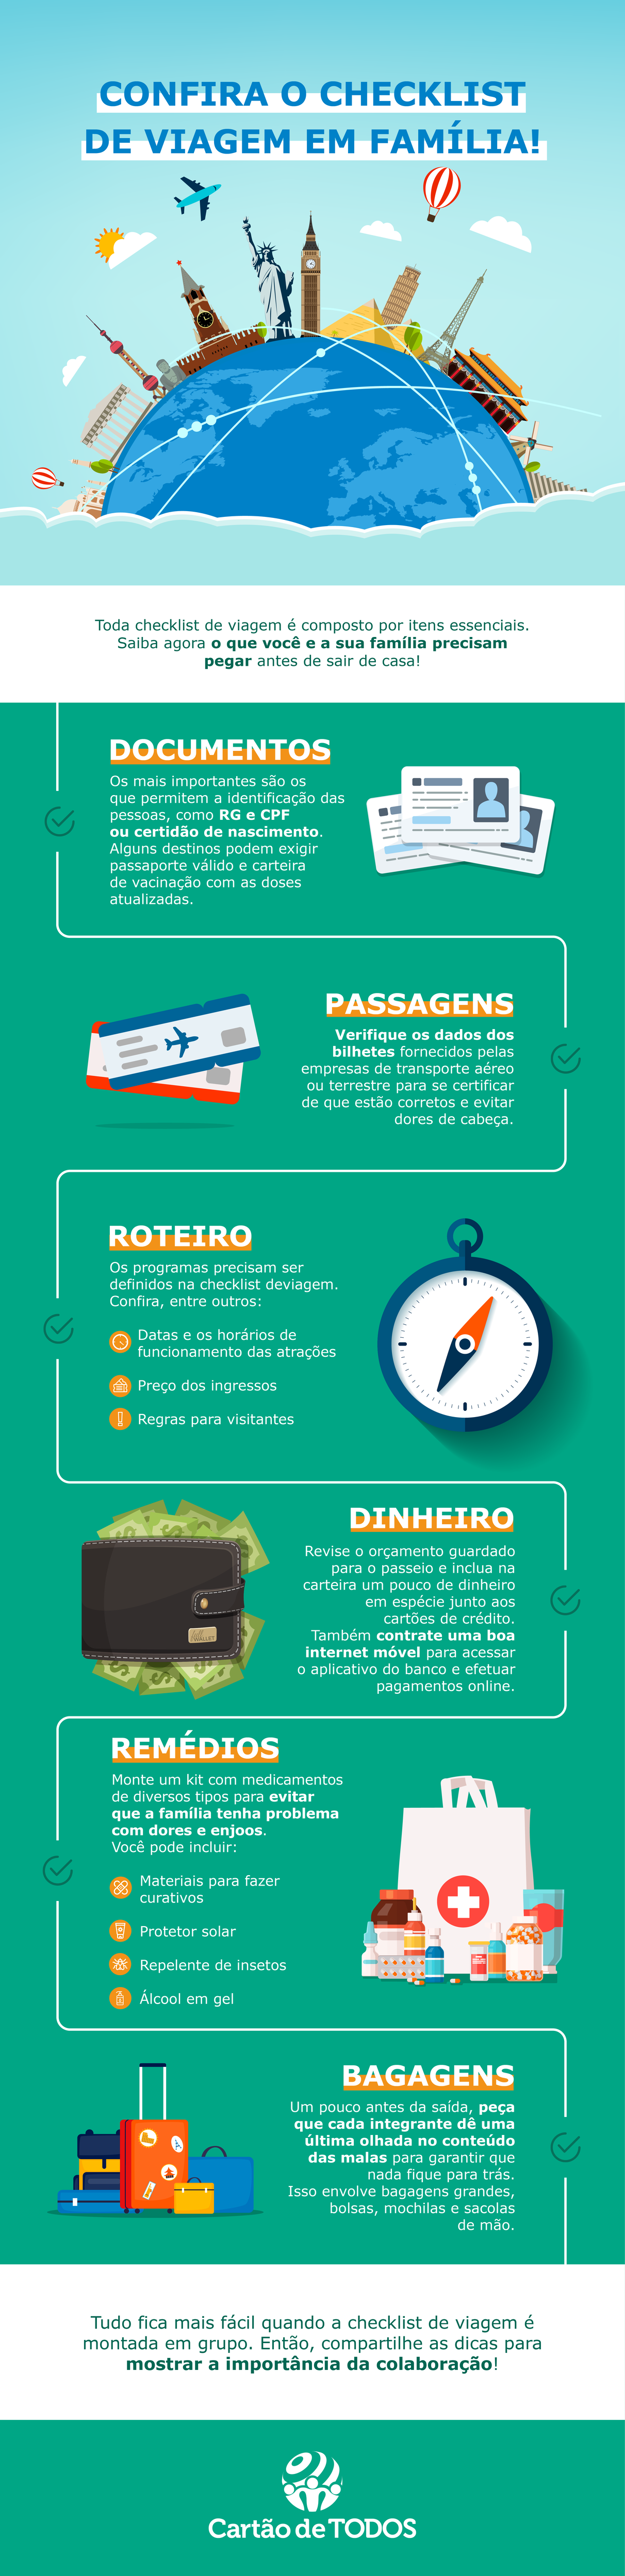 [Infográfico] - Confira o checklist de viagem em família!
